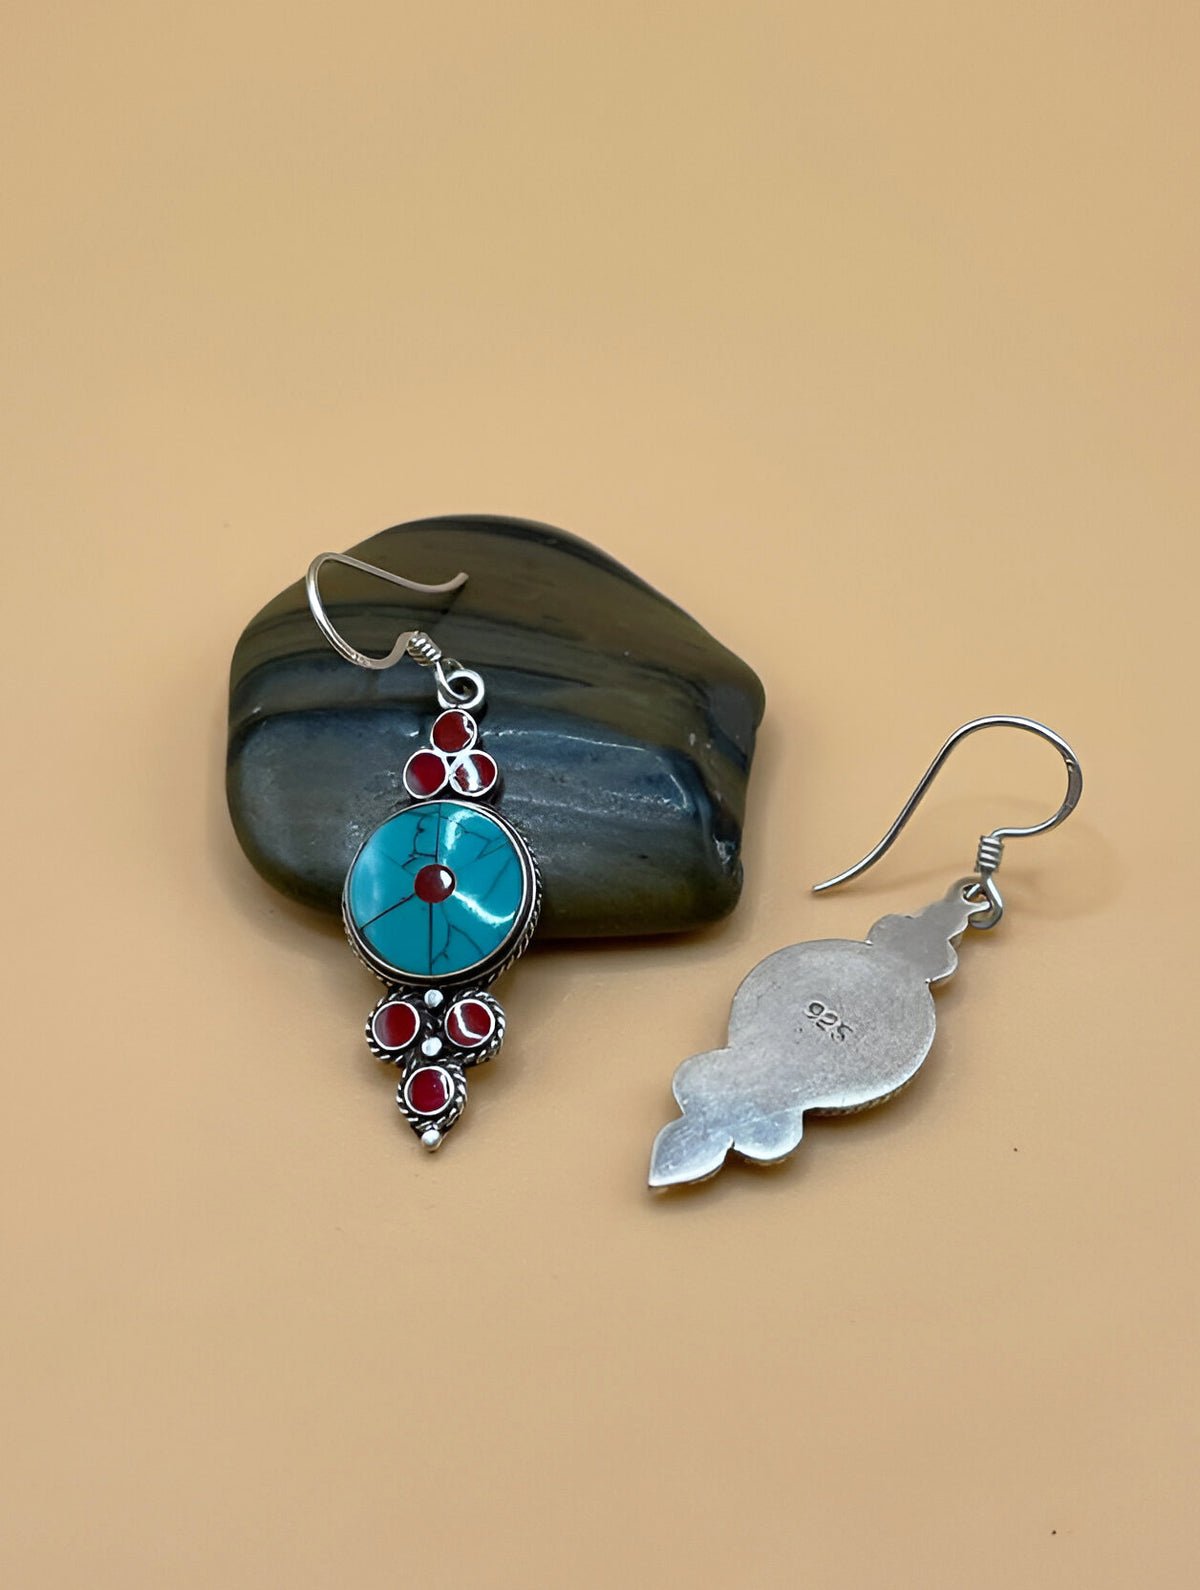 Sterling Silver Gemstone Tibetan Round Inlay Earrings